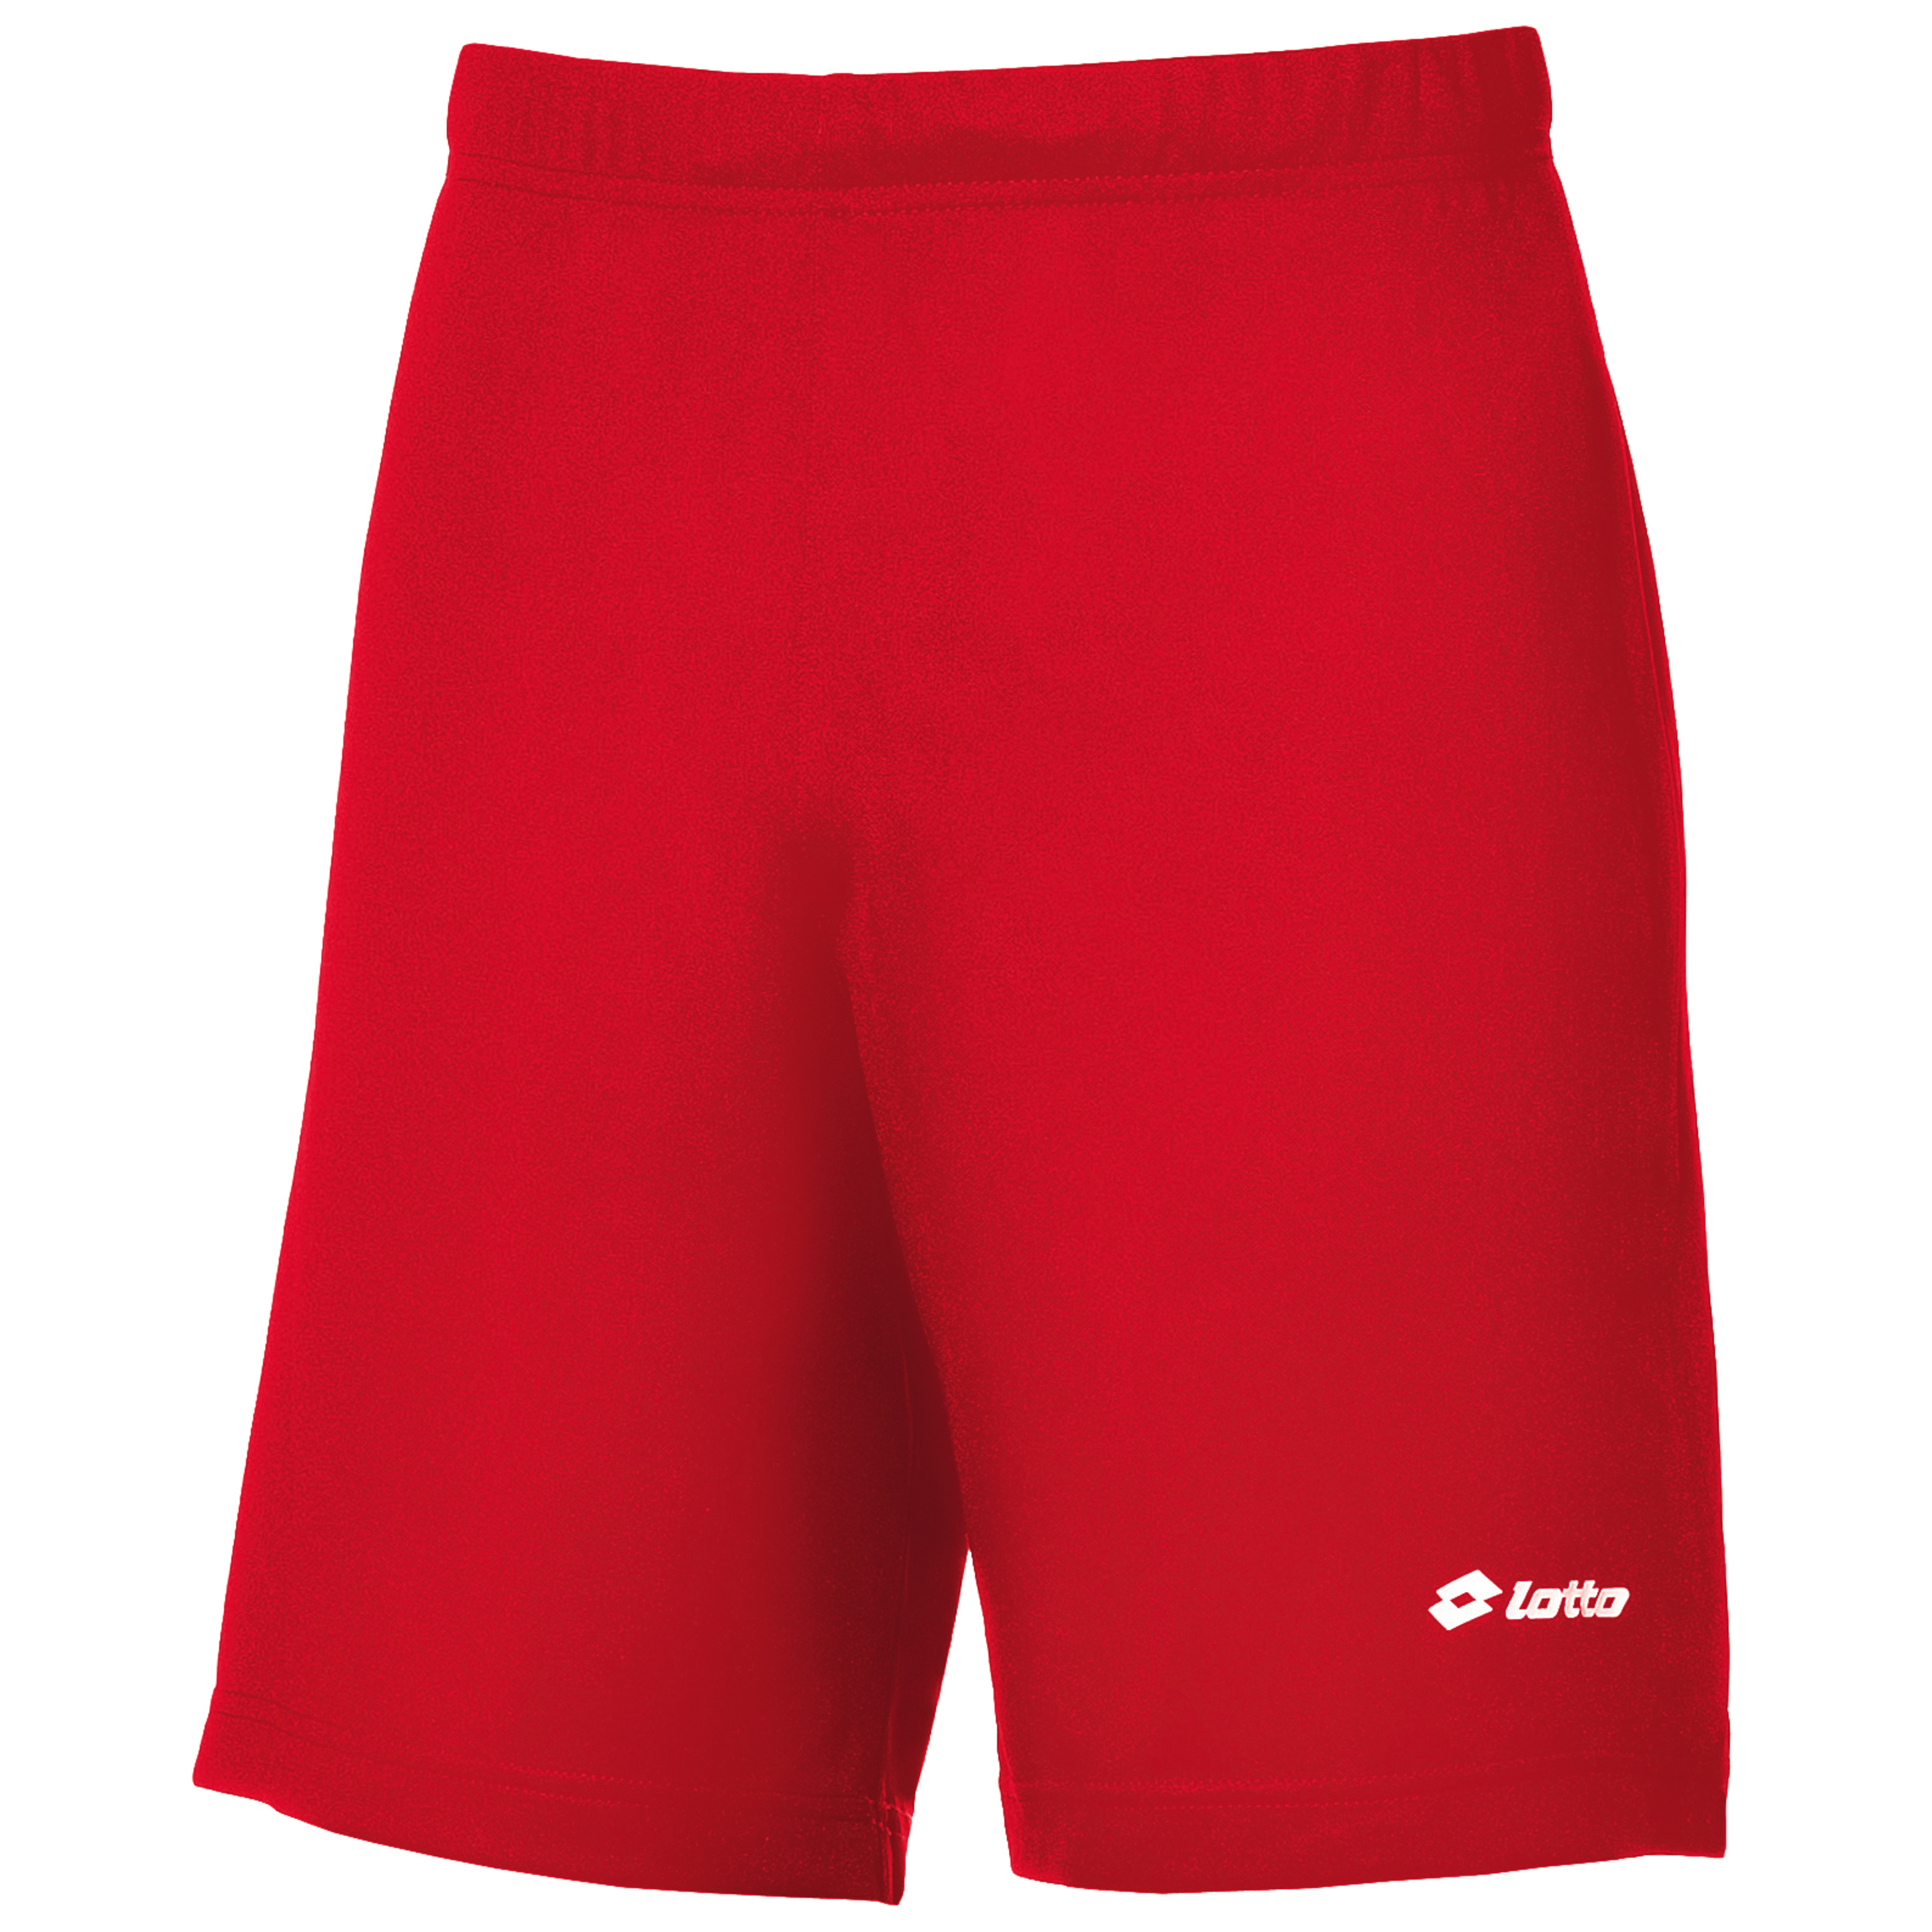 Lotto- Pantalones Cortos De Deporte/fútbol - Rojo  MKP